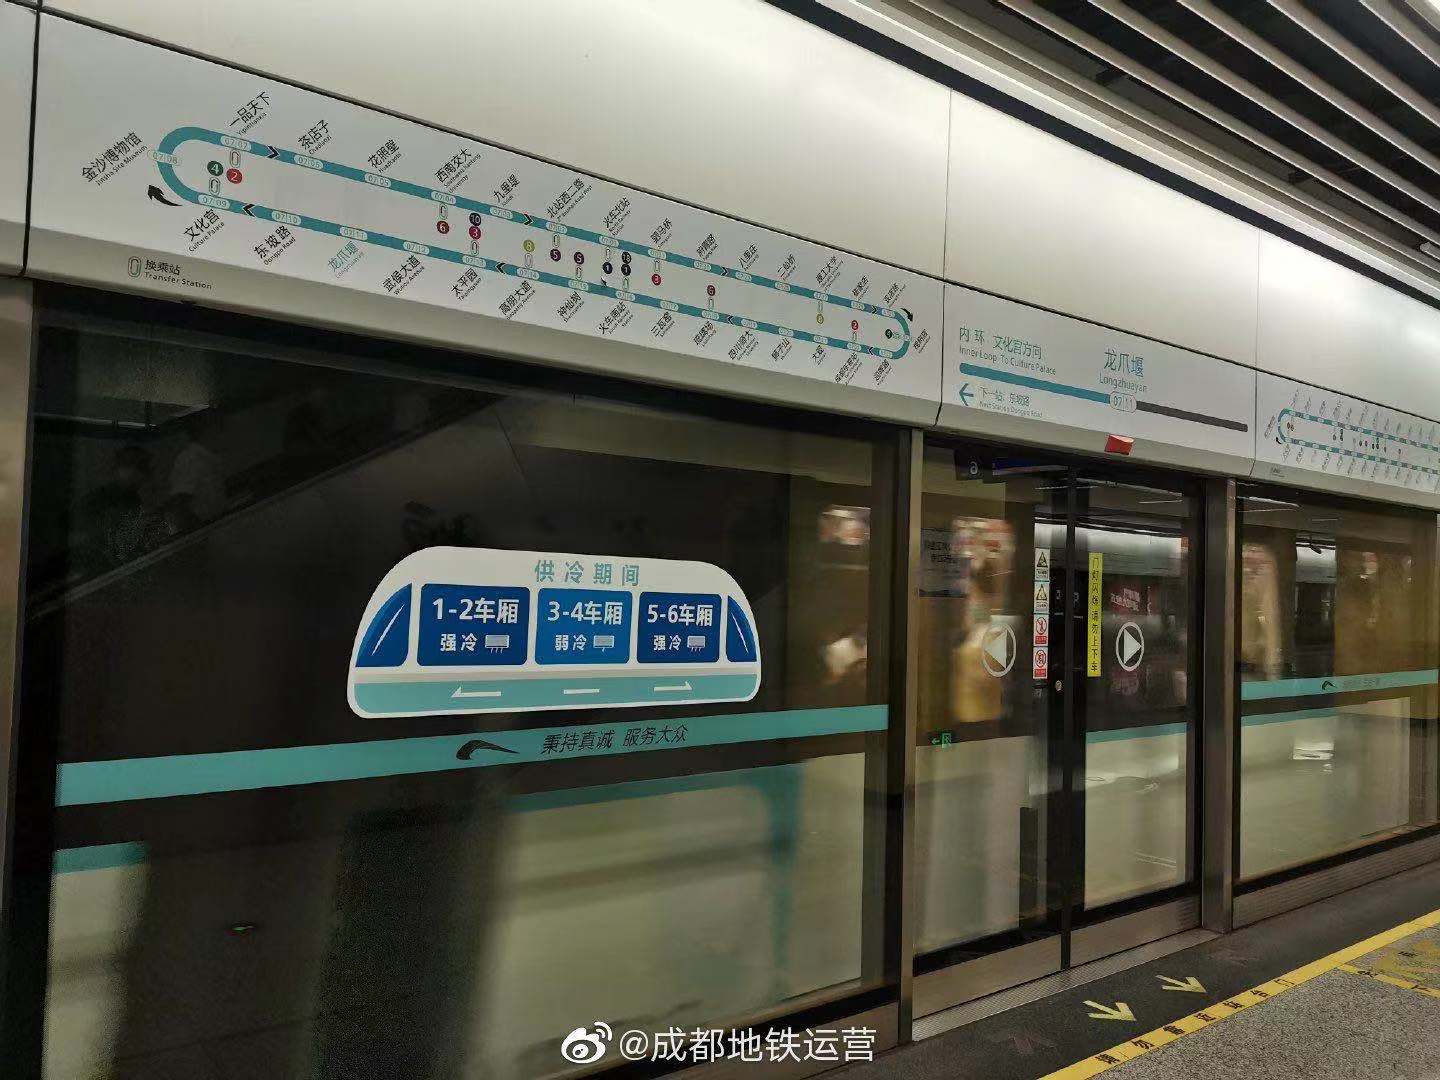 成都地铁弱冷车厢图。微博@成都地铁运营图